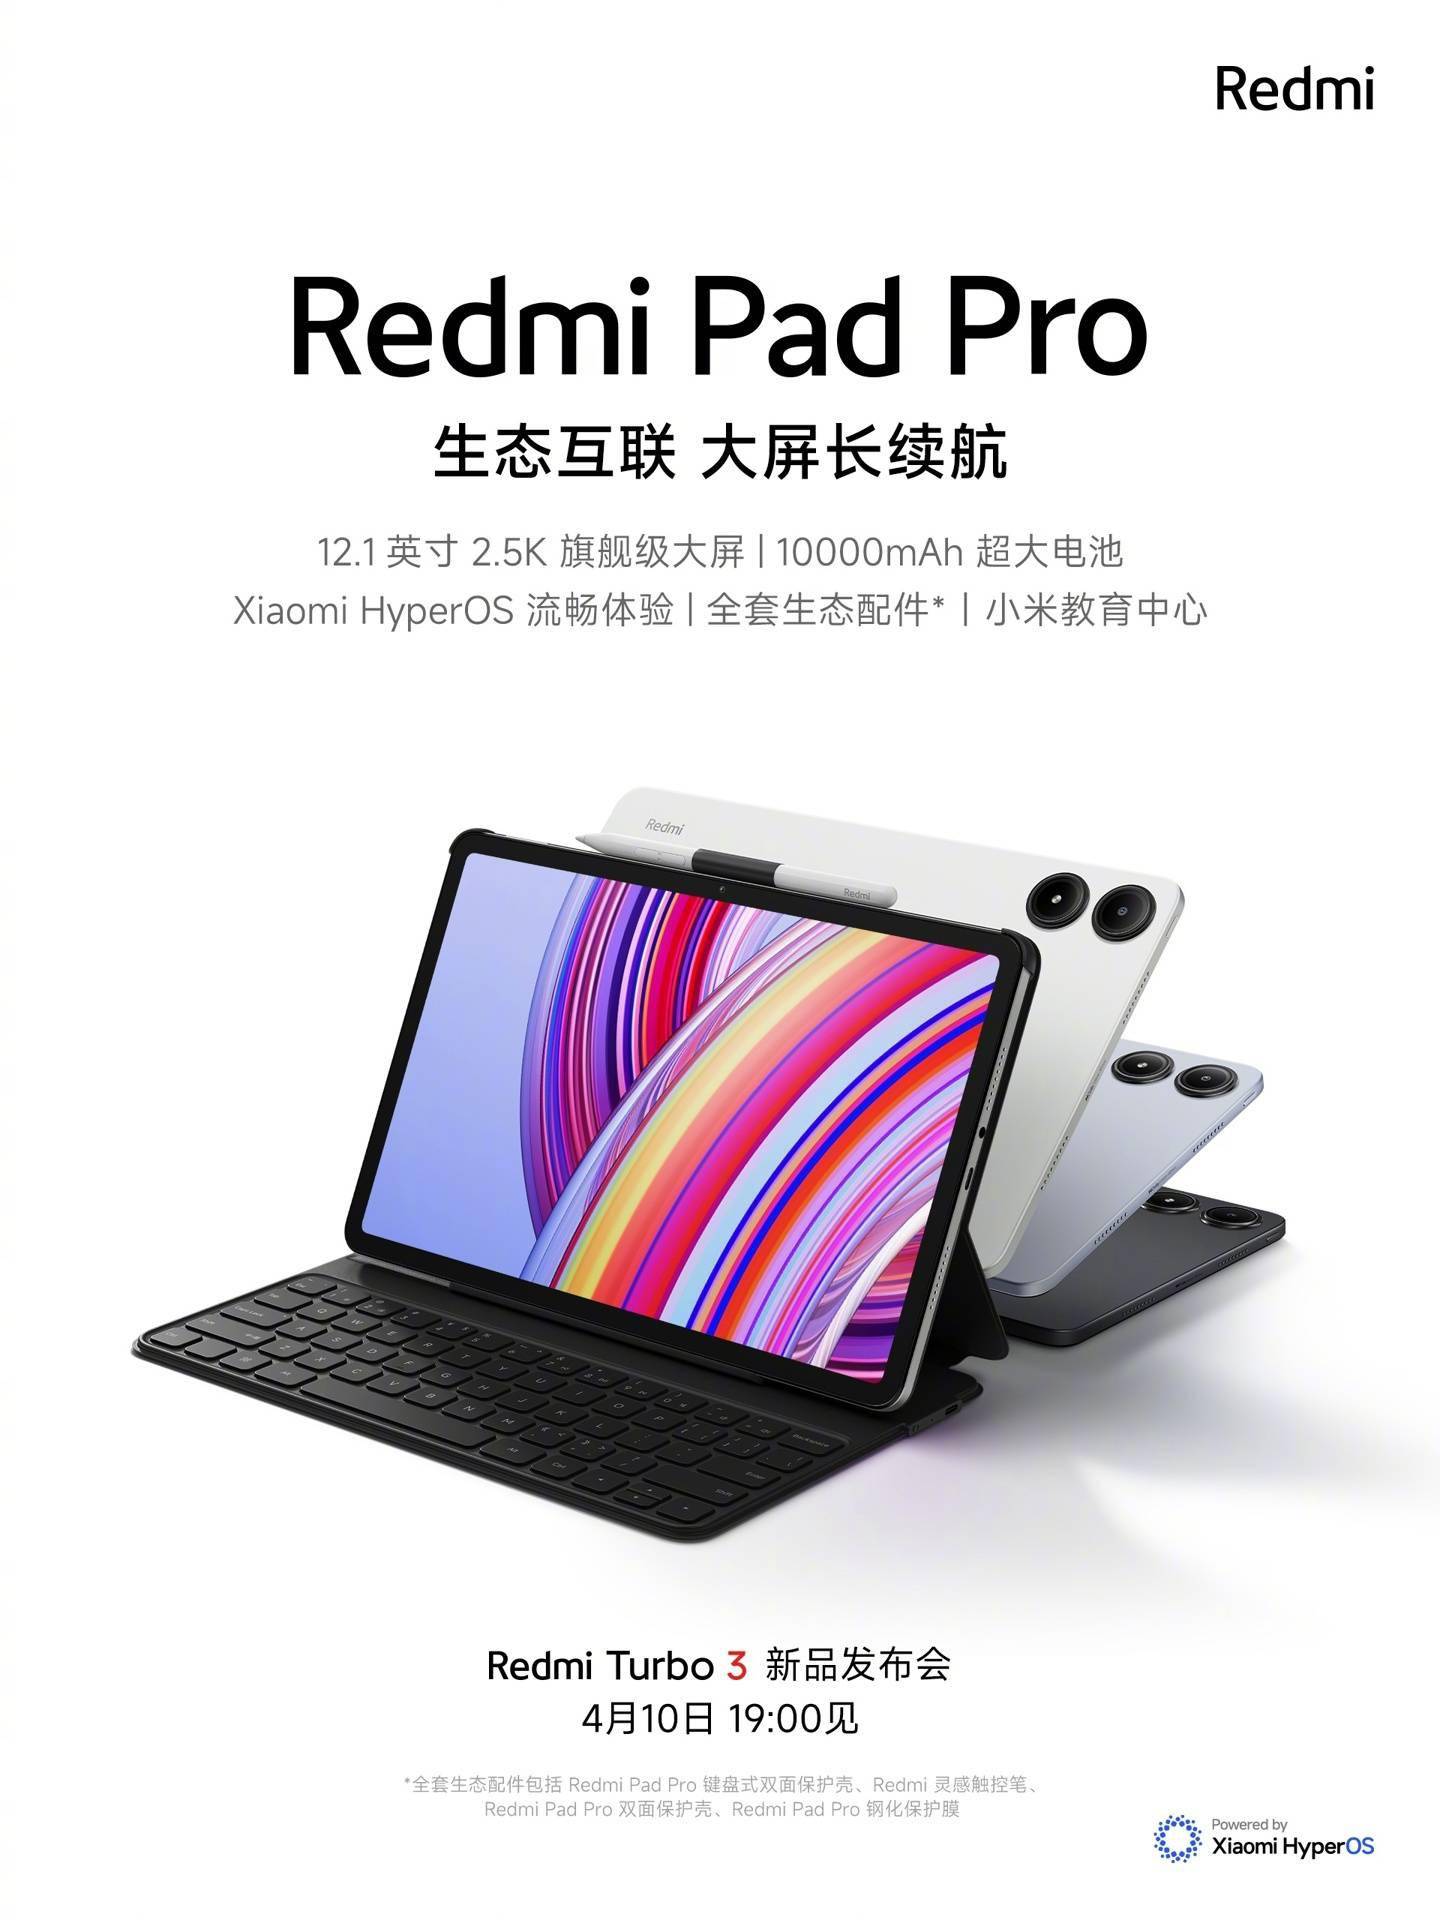 1499 元起，小米 Redmi Pad Pro 平板今日开售 